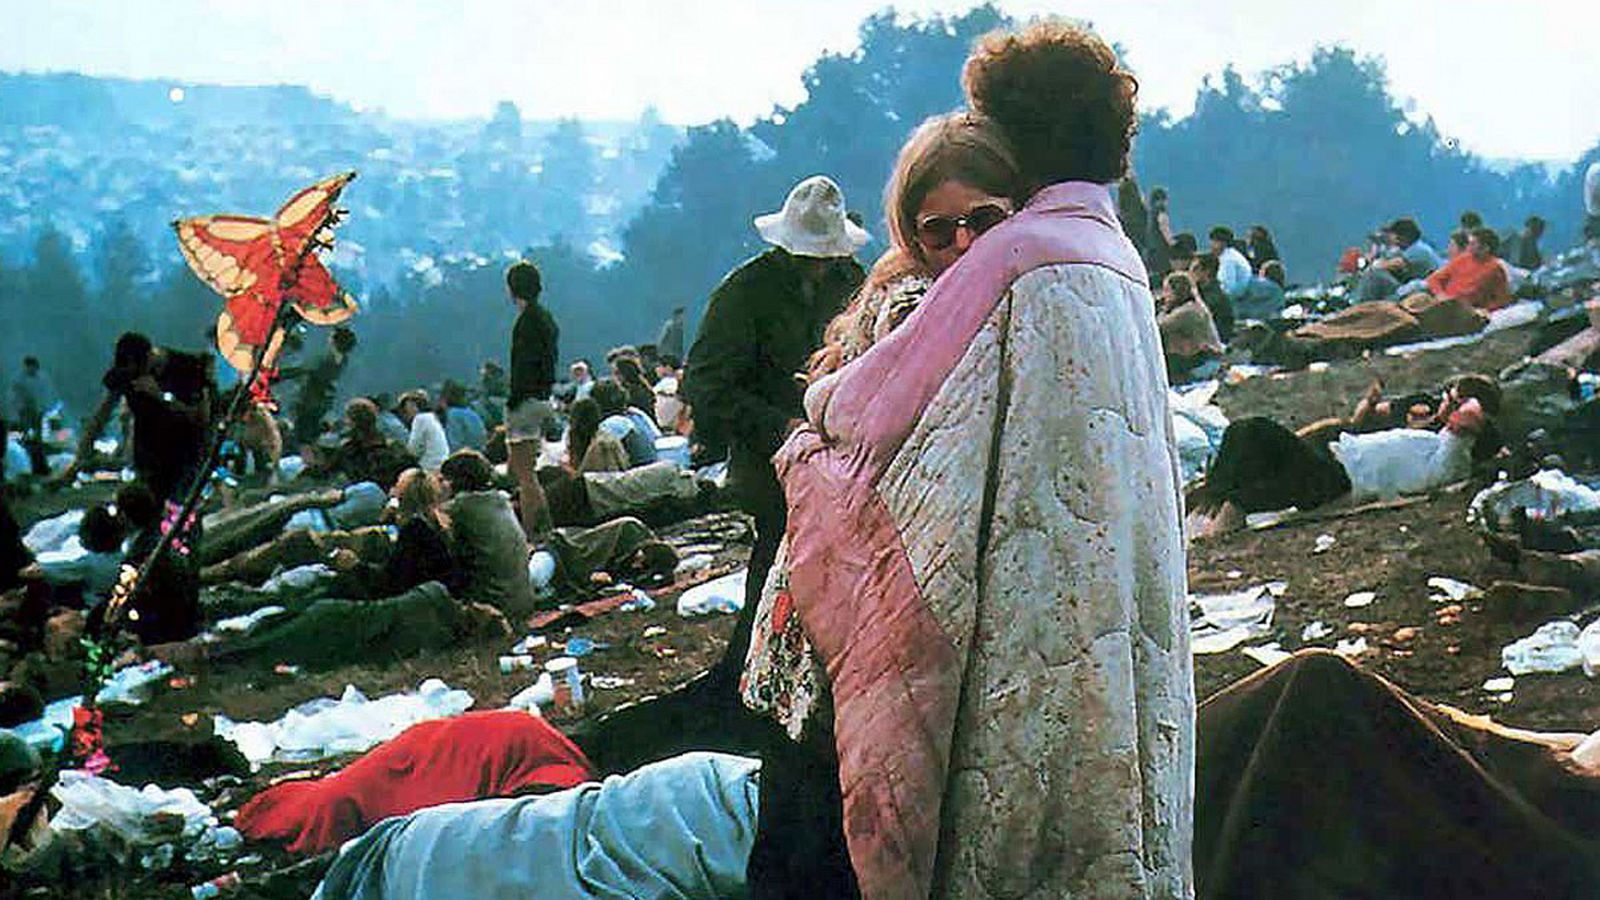 Se cumplen 50 años del festival de Woodstock, sin que ninguna edición haya igualado a la original